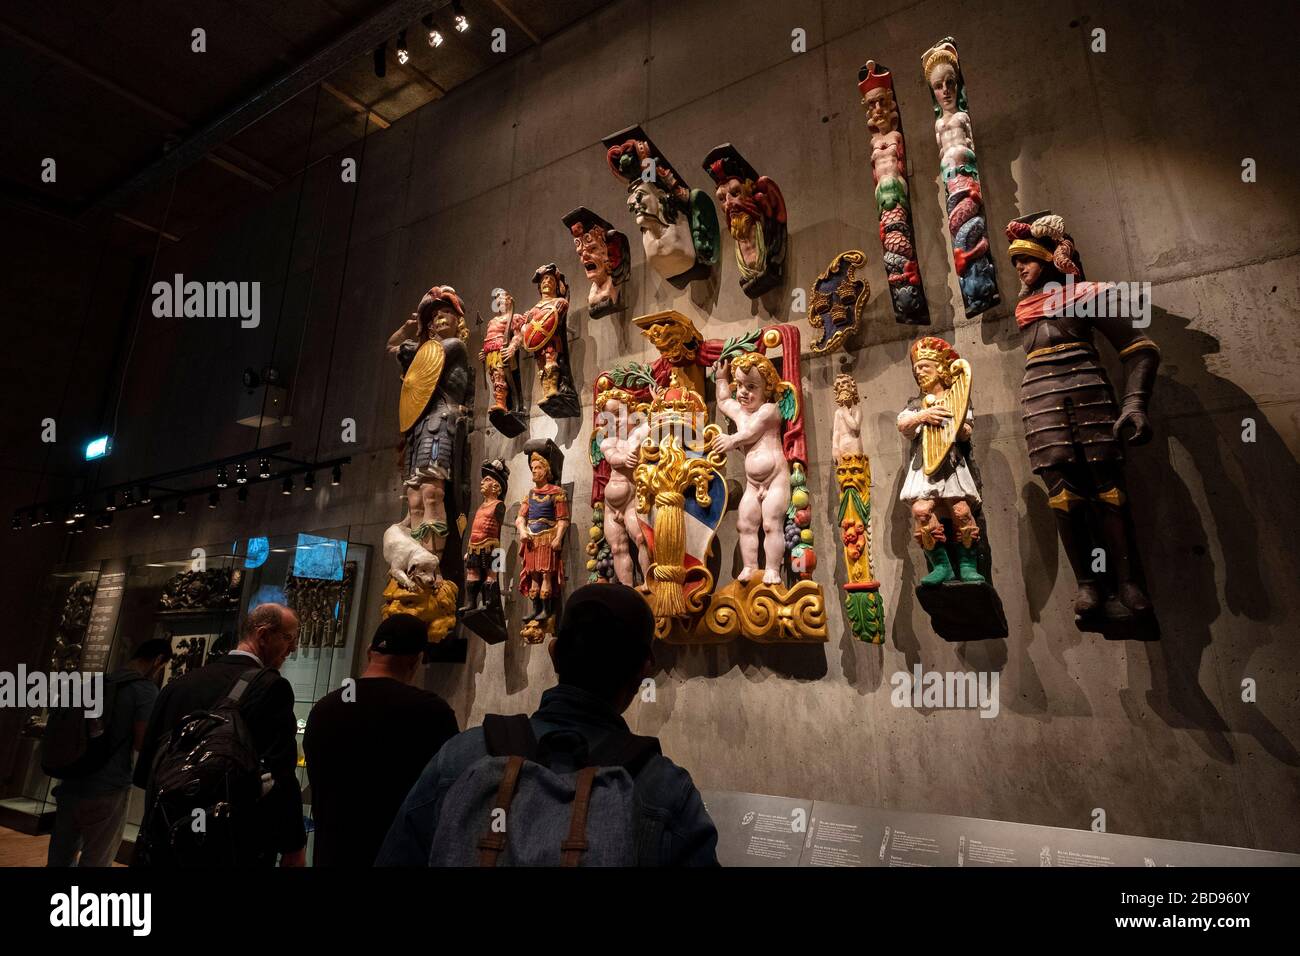 Touristes regardant des répliques colorées de sculptures du navire de guerre Vasa au musée Vasa de Stockholm, Suède, Europe Banque D'Images